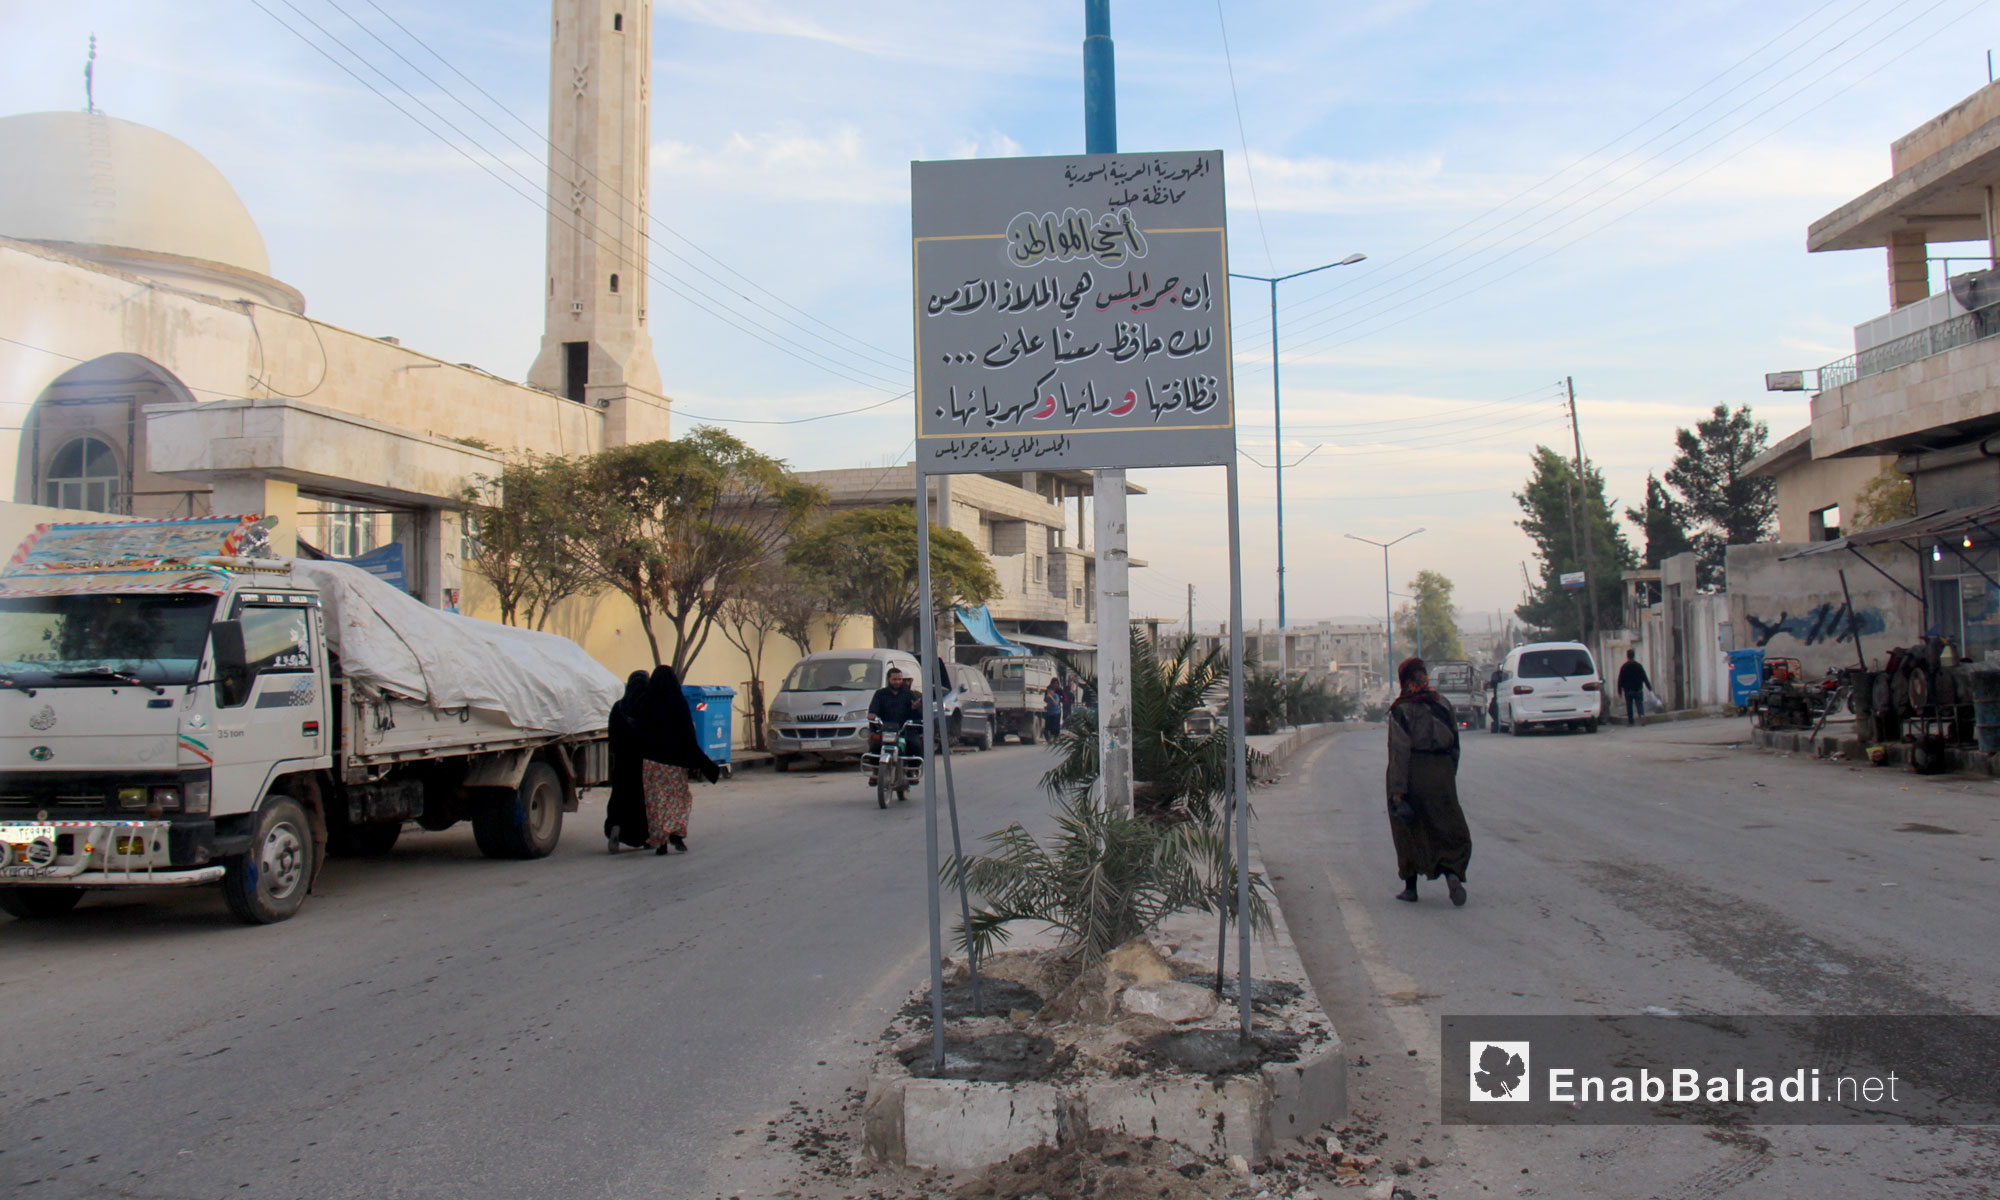 لافتة تدعو للحفاظ على أمن جرابلس شمال حلب وخدماتها - تشرين الثاني 2016 (عنب بلدي)